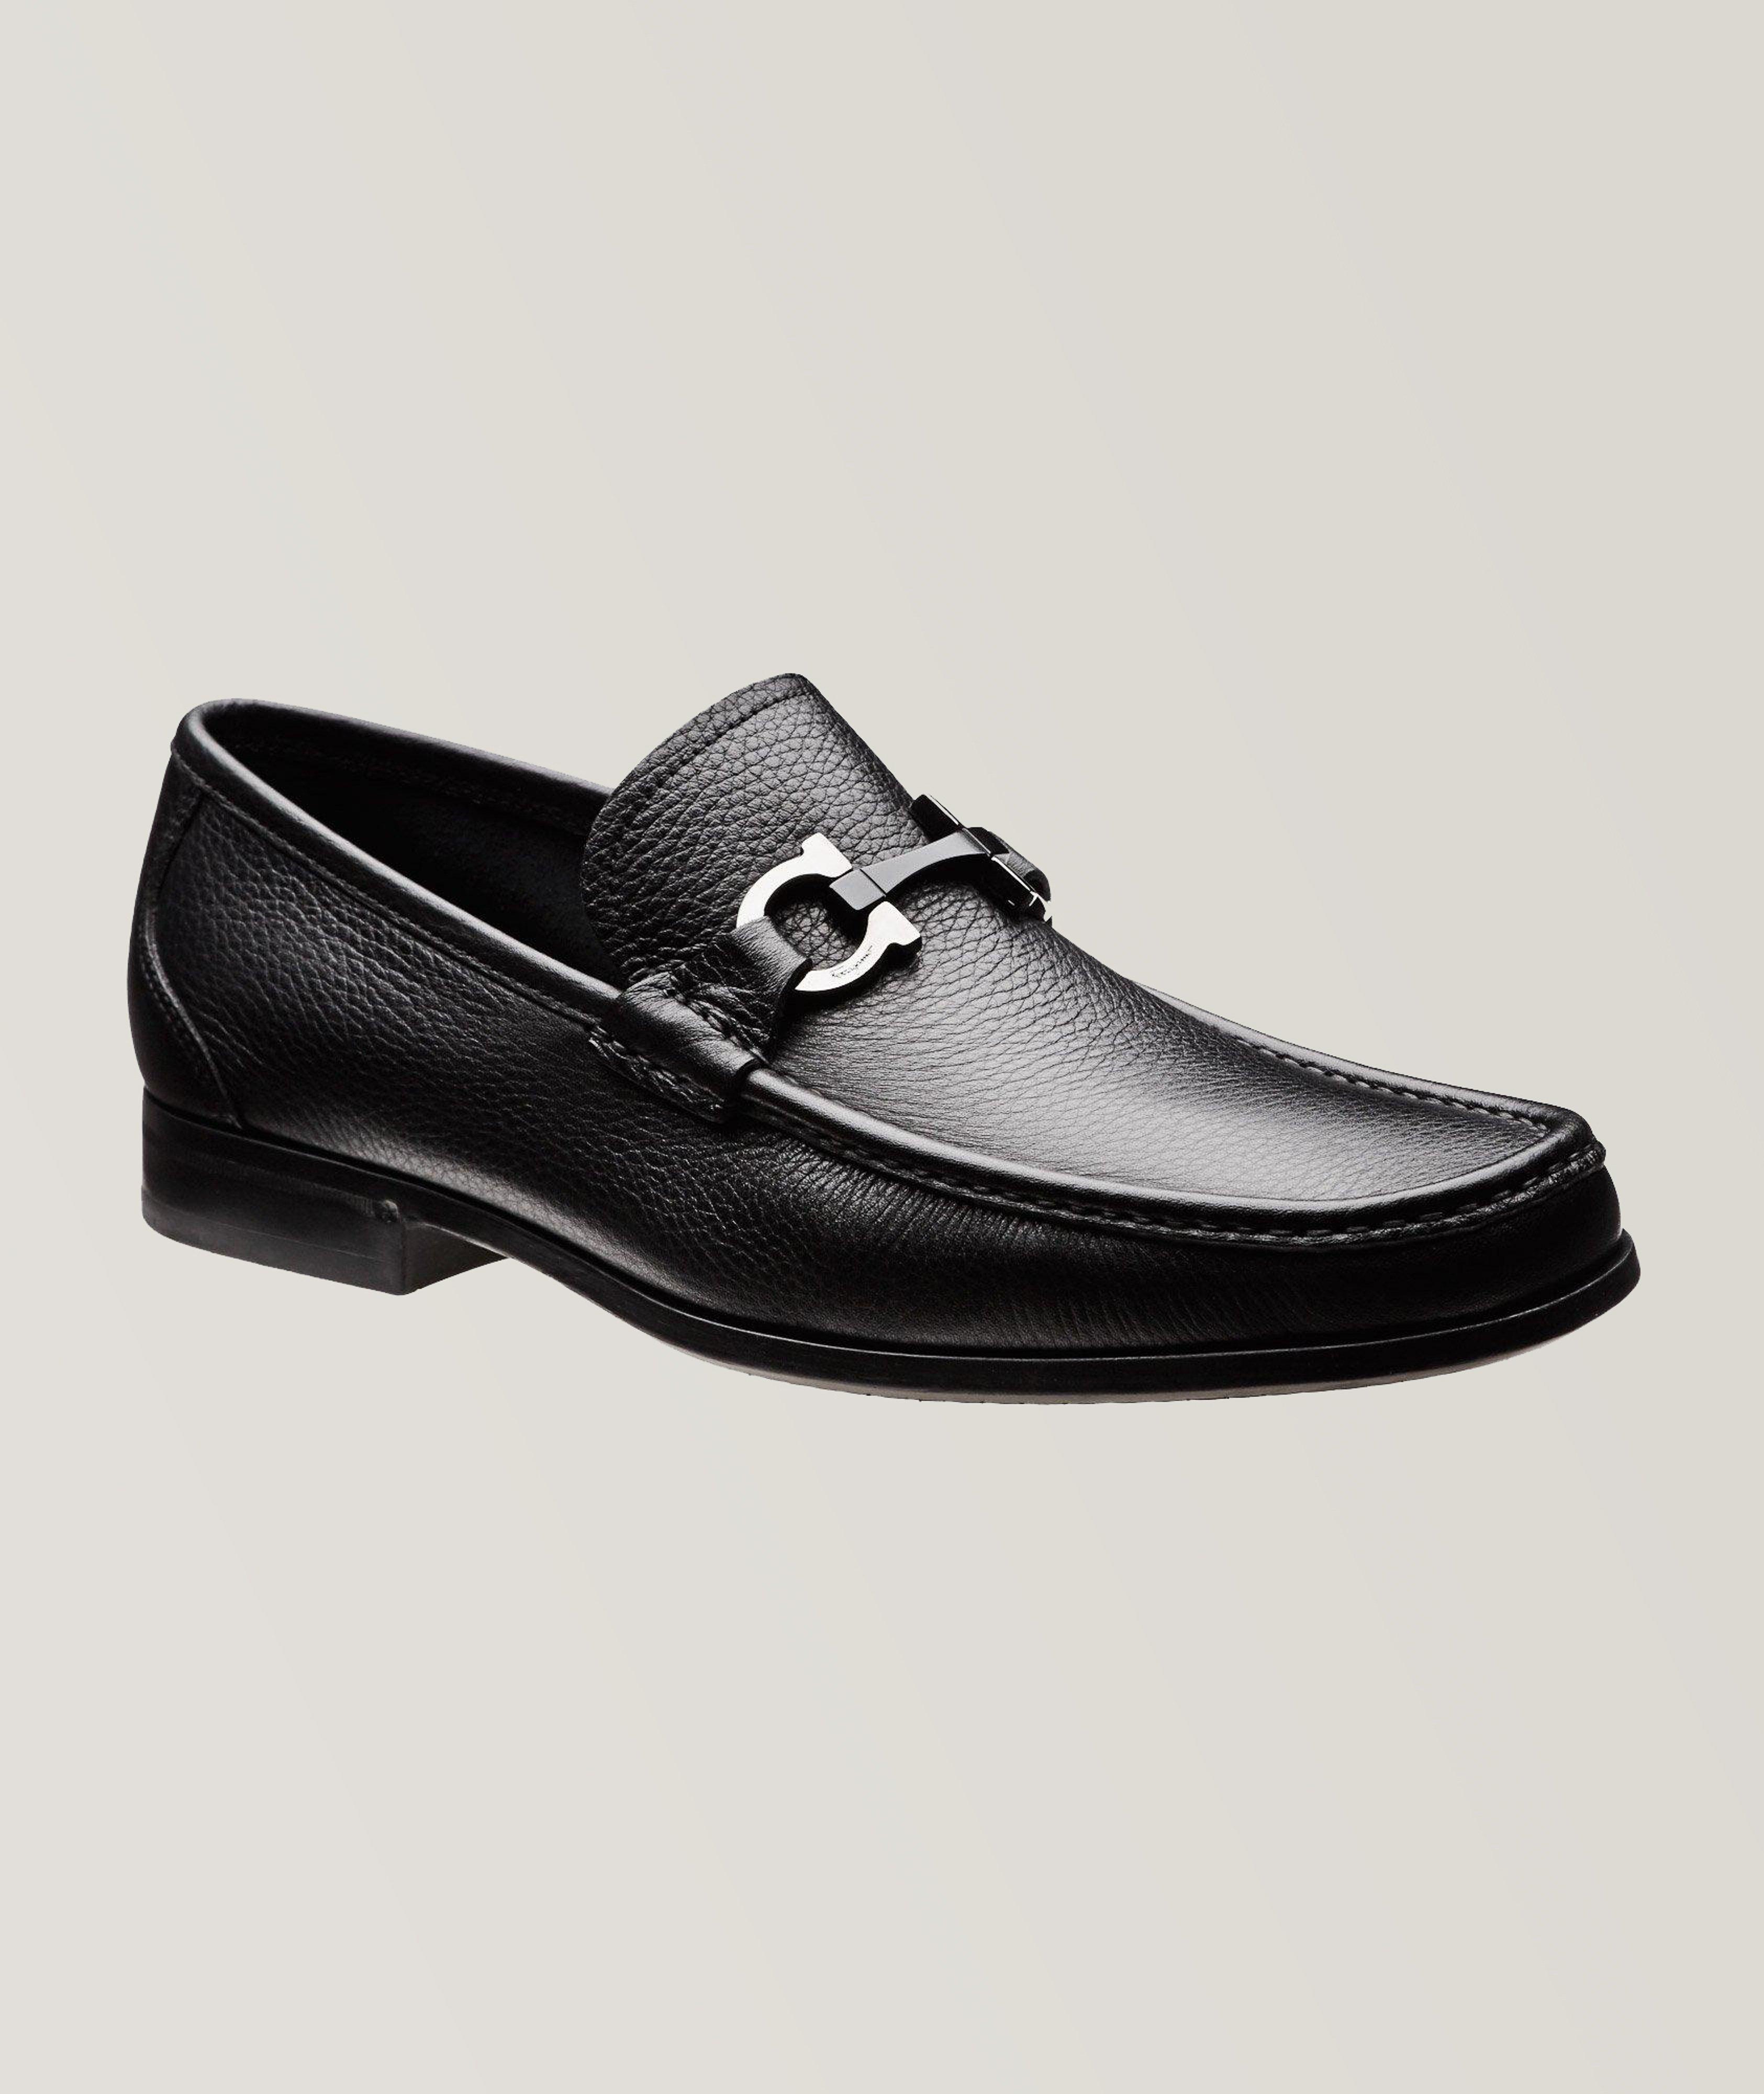 Ferragamo Gancini Loafer Shoe  Dress shoes men, Ferragamo shoes mens,  Gentleman shoes